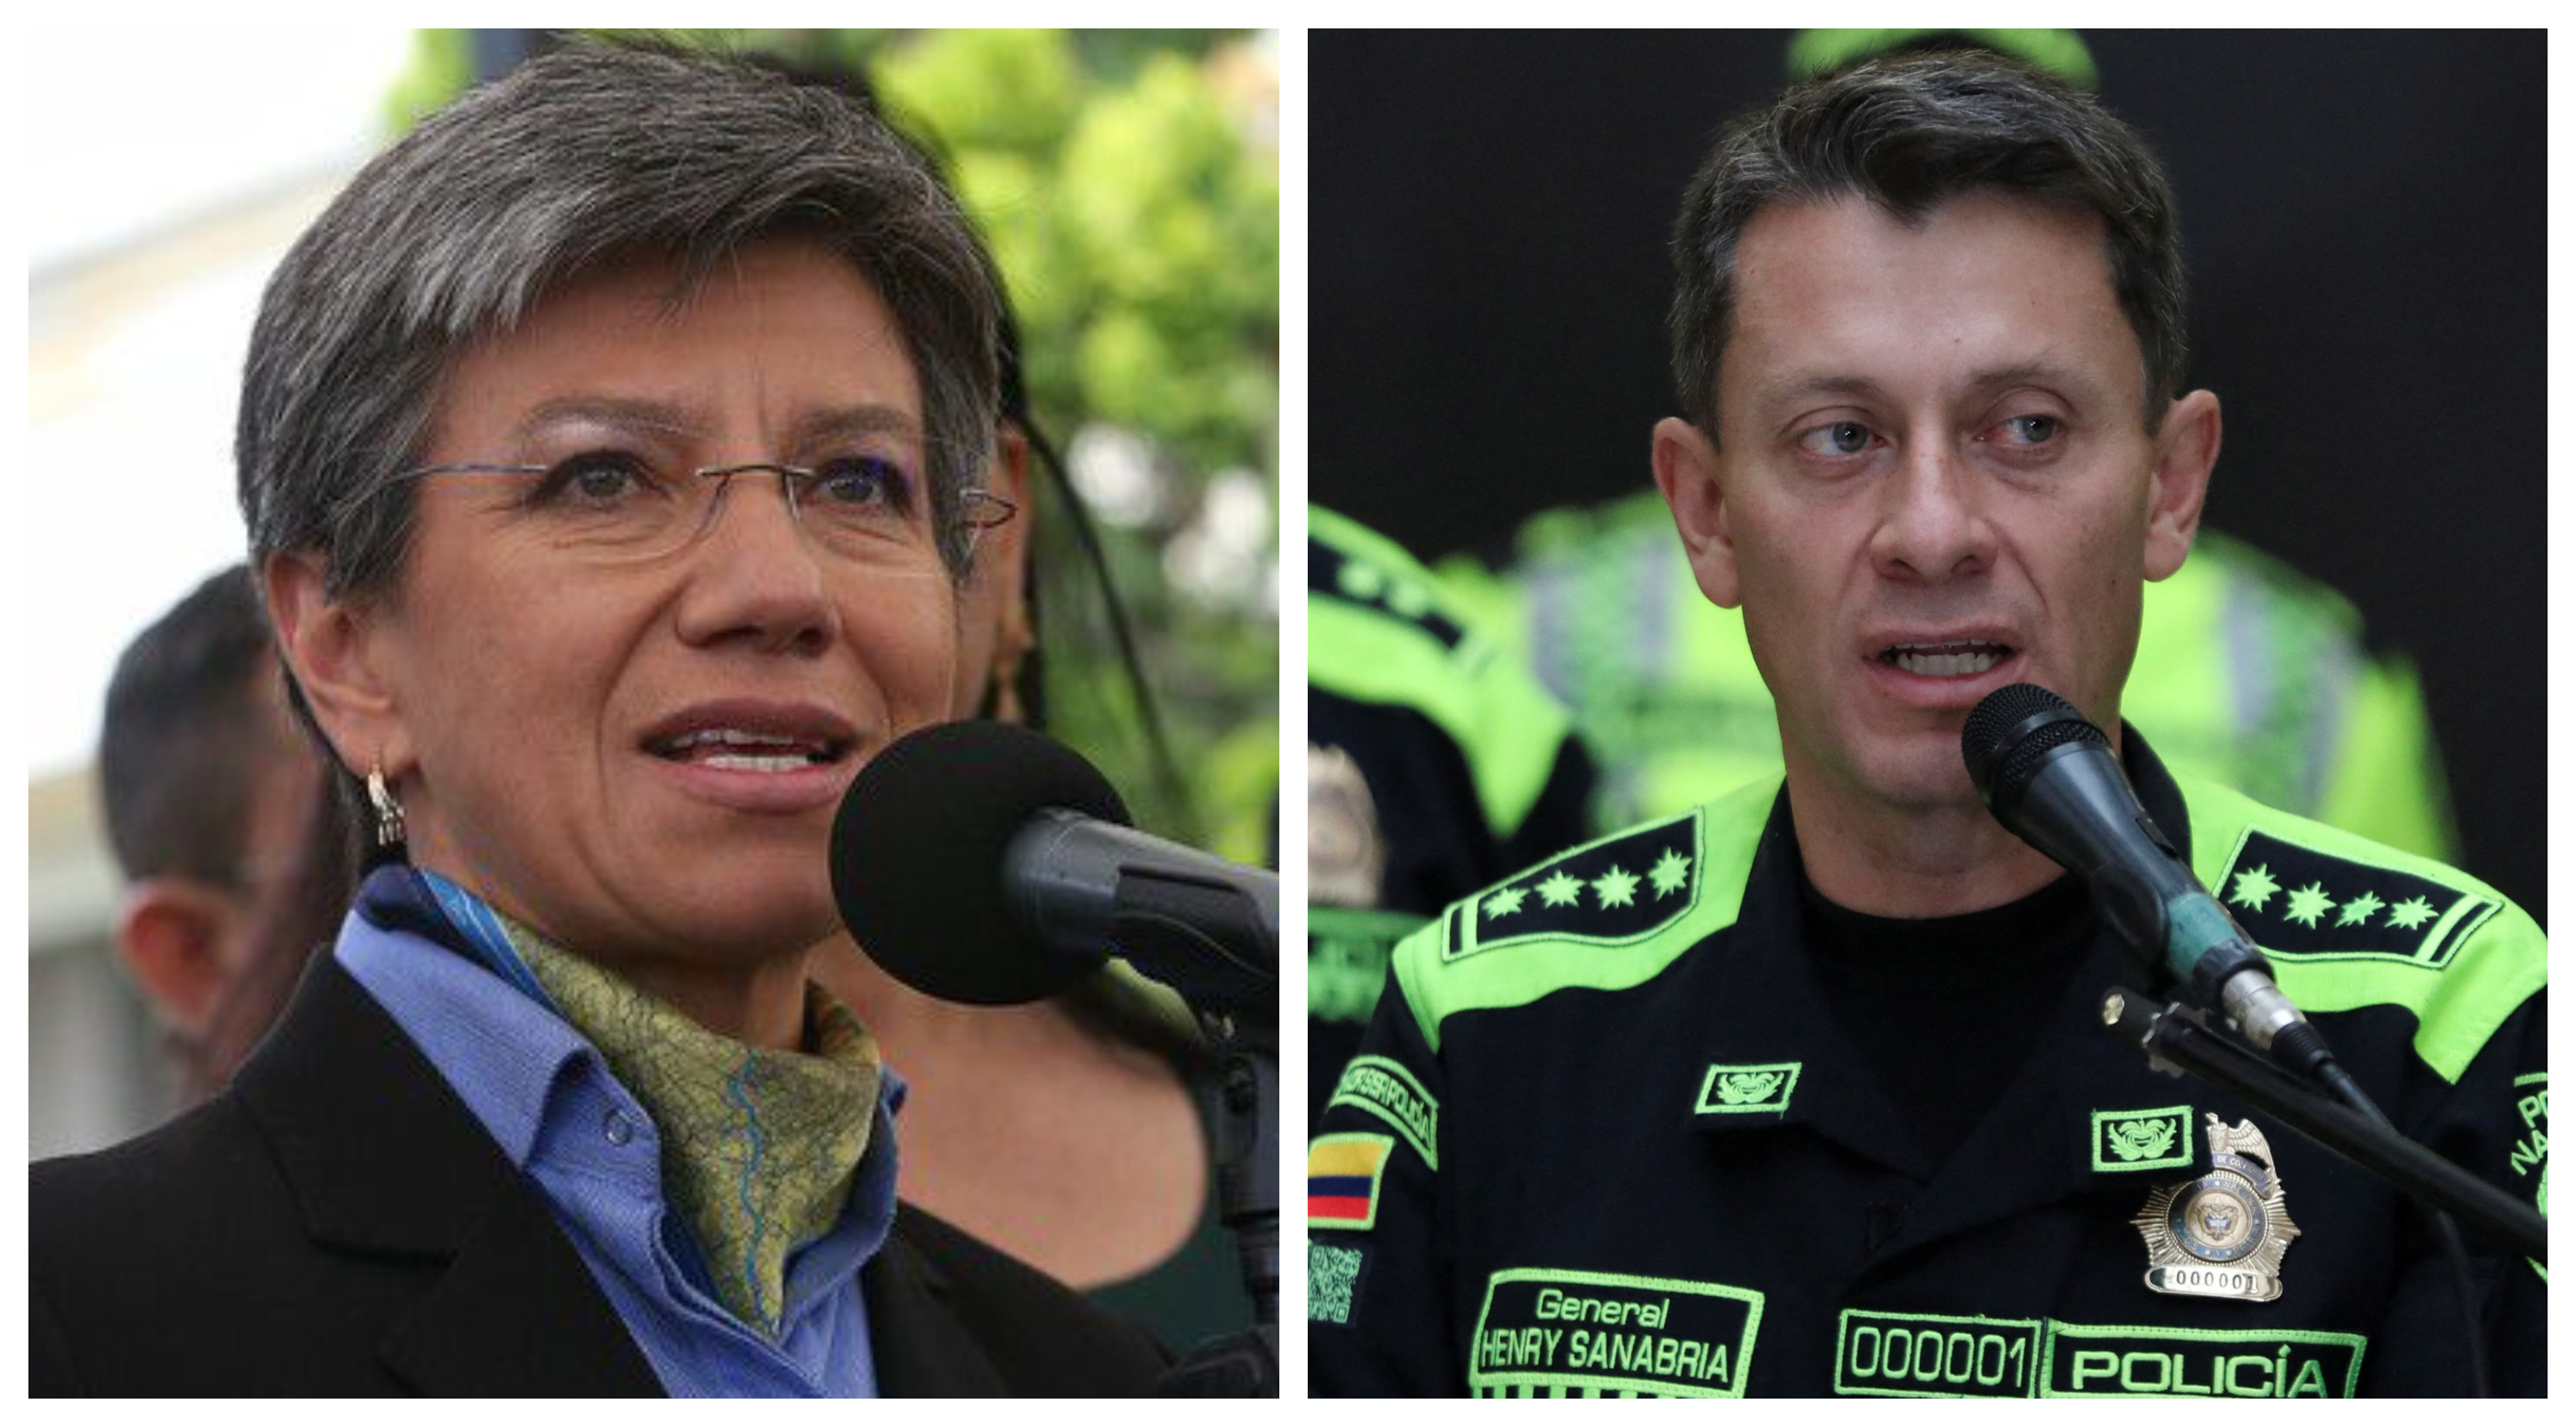 La alcaldesa de Bogotá cuestionó duramente las posturas del director de la Policía sobre la comunidad LGBTIQ+ y el aborto.
Colprensa.